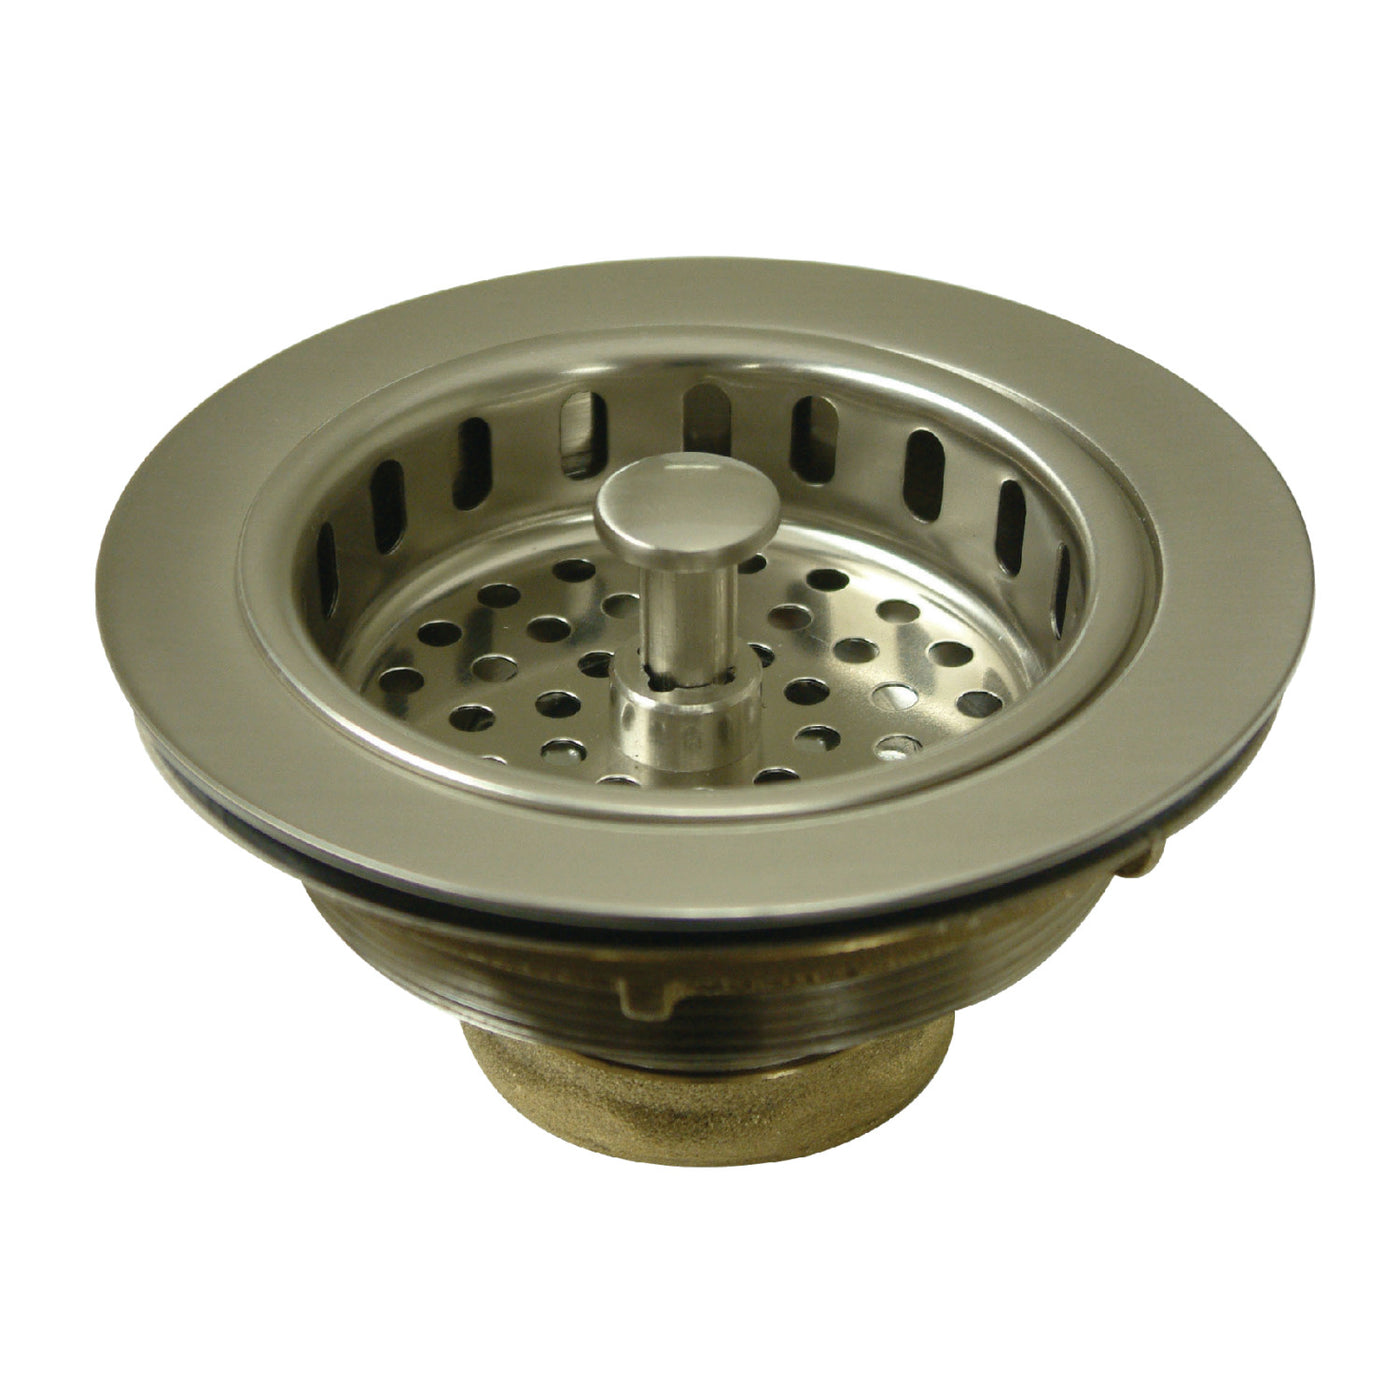 Elements of Design EBS1008 Kitchen Sink Basket Strainer, Brushed Nickel